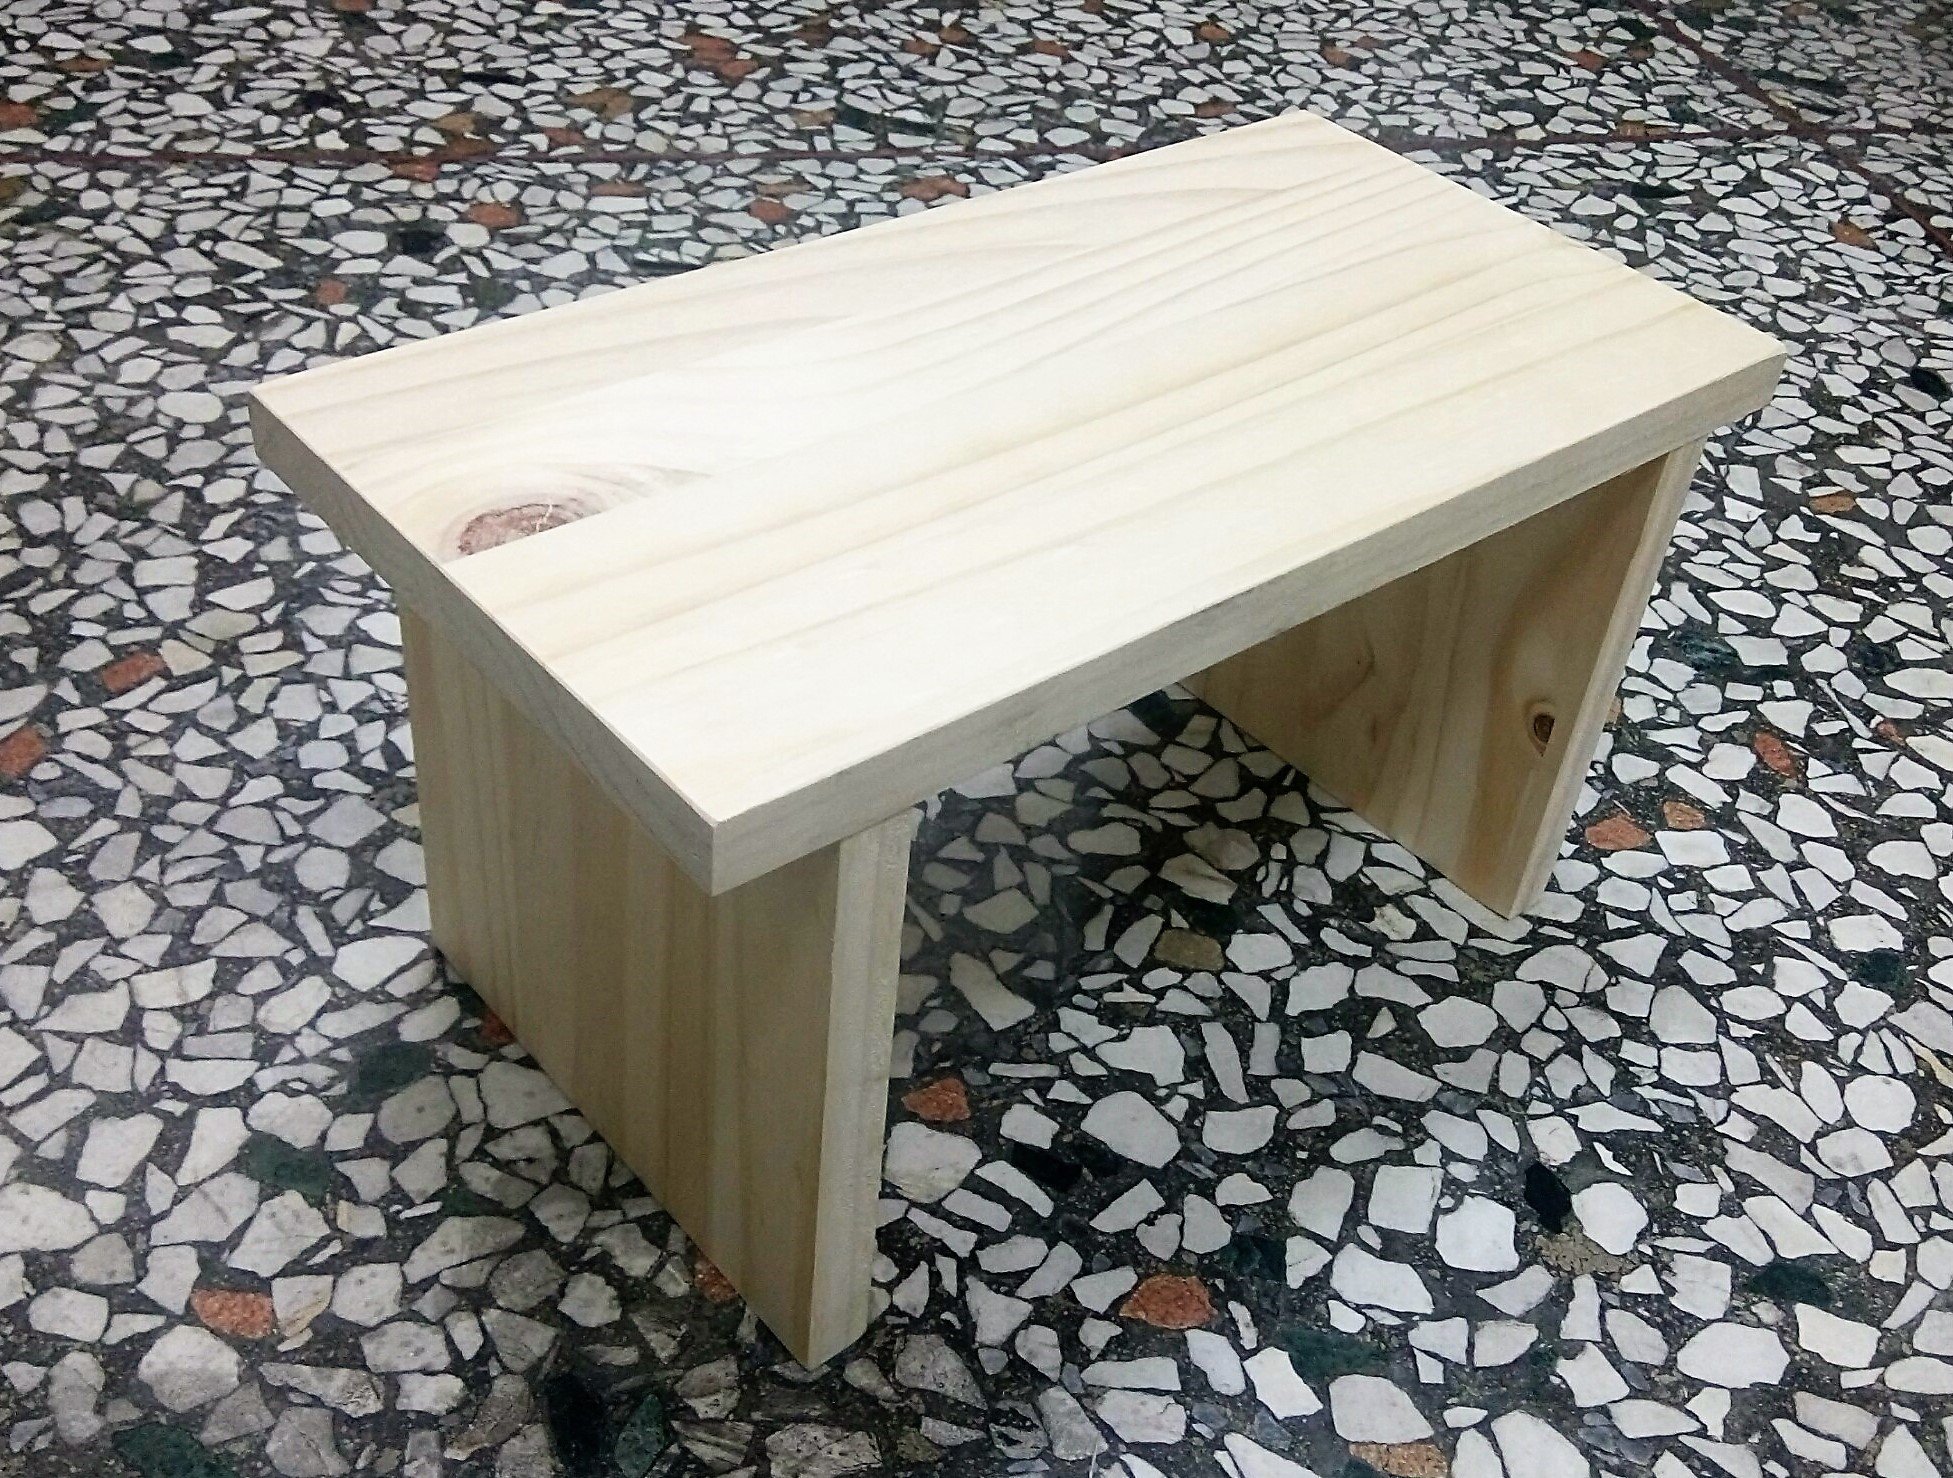 限量款! 松木 DIY 木器 小椅子 長方椅 小板凳 兒童椅 板凳 矮椅 矮板凳椅 台灣製造